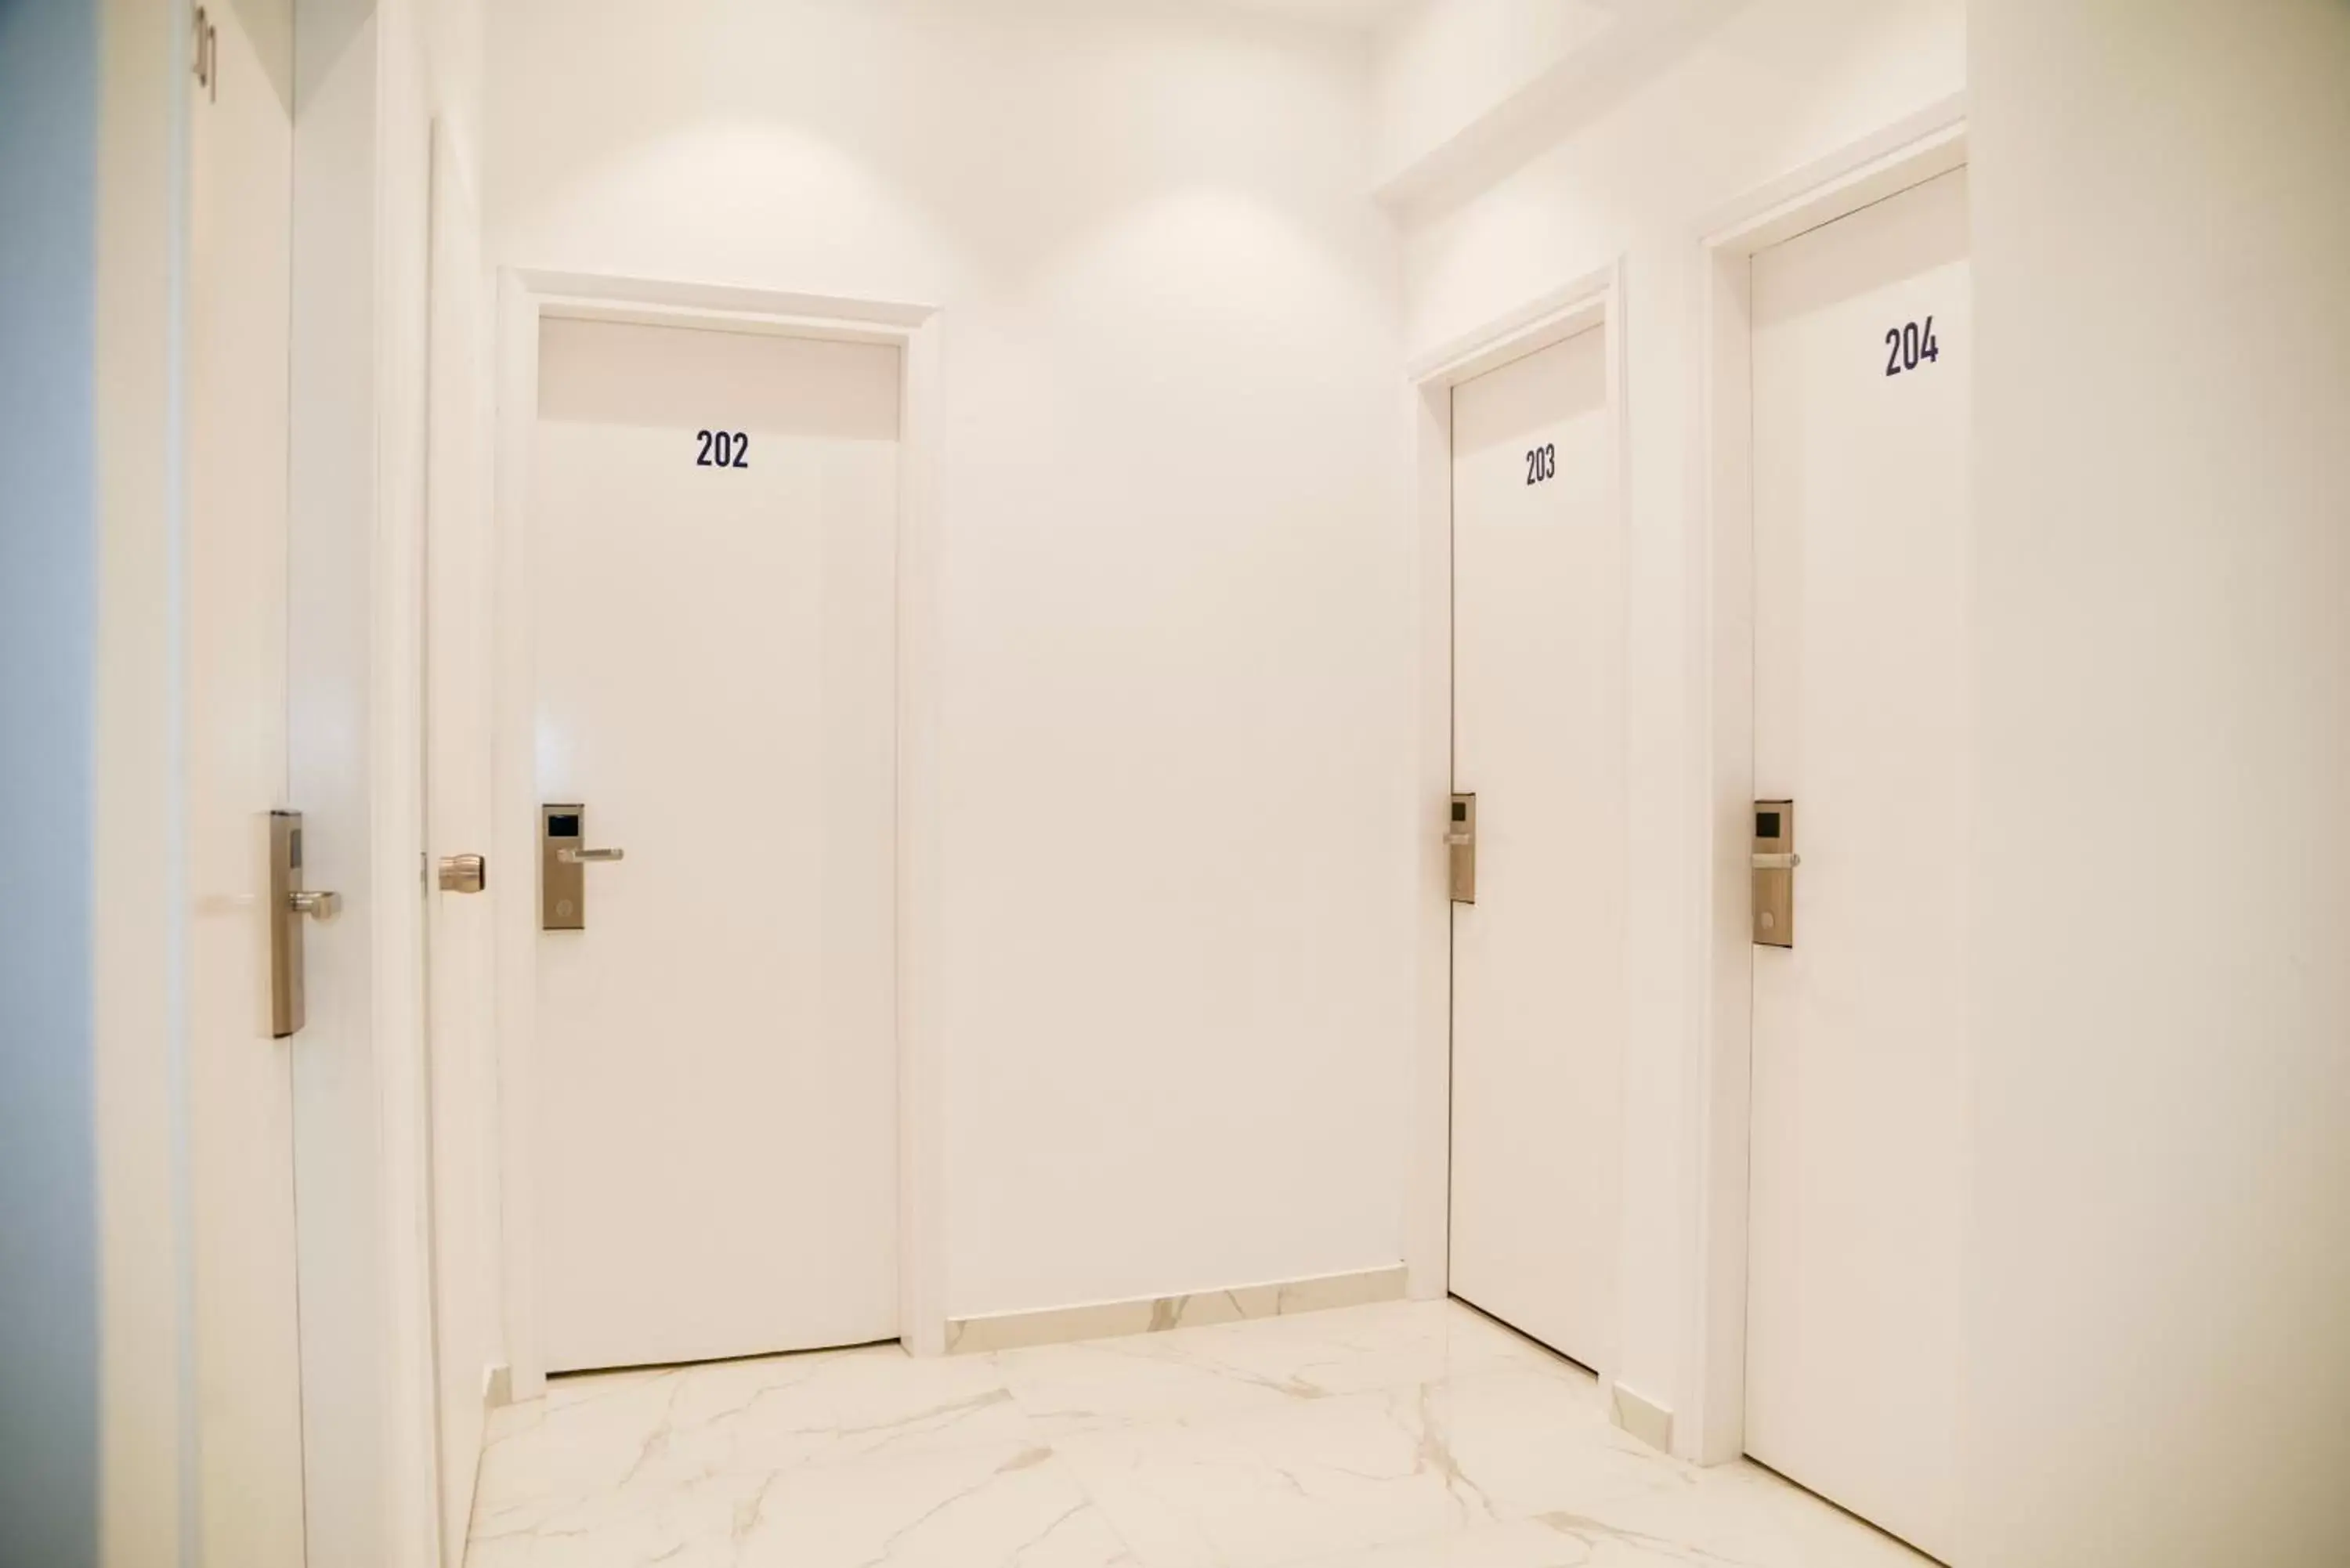 Business facilities, Bathroom in HOTEL_TIER